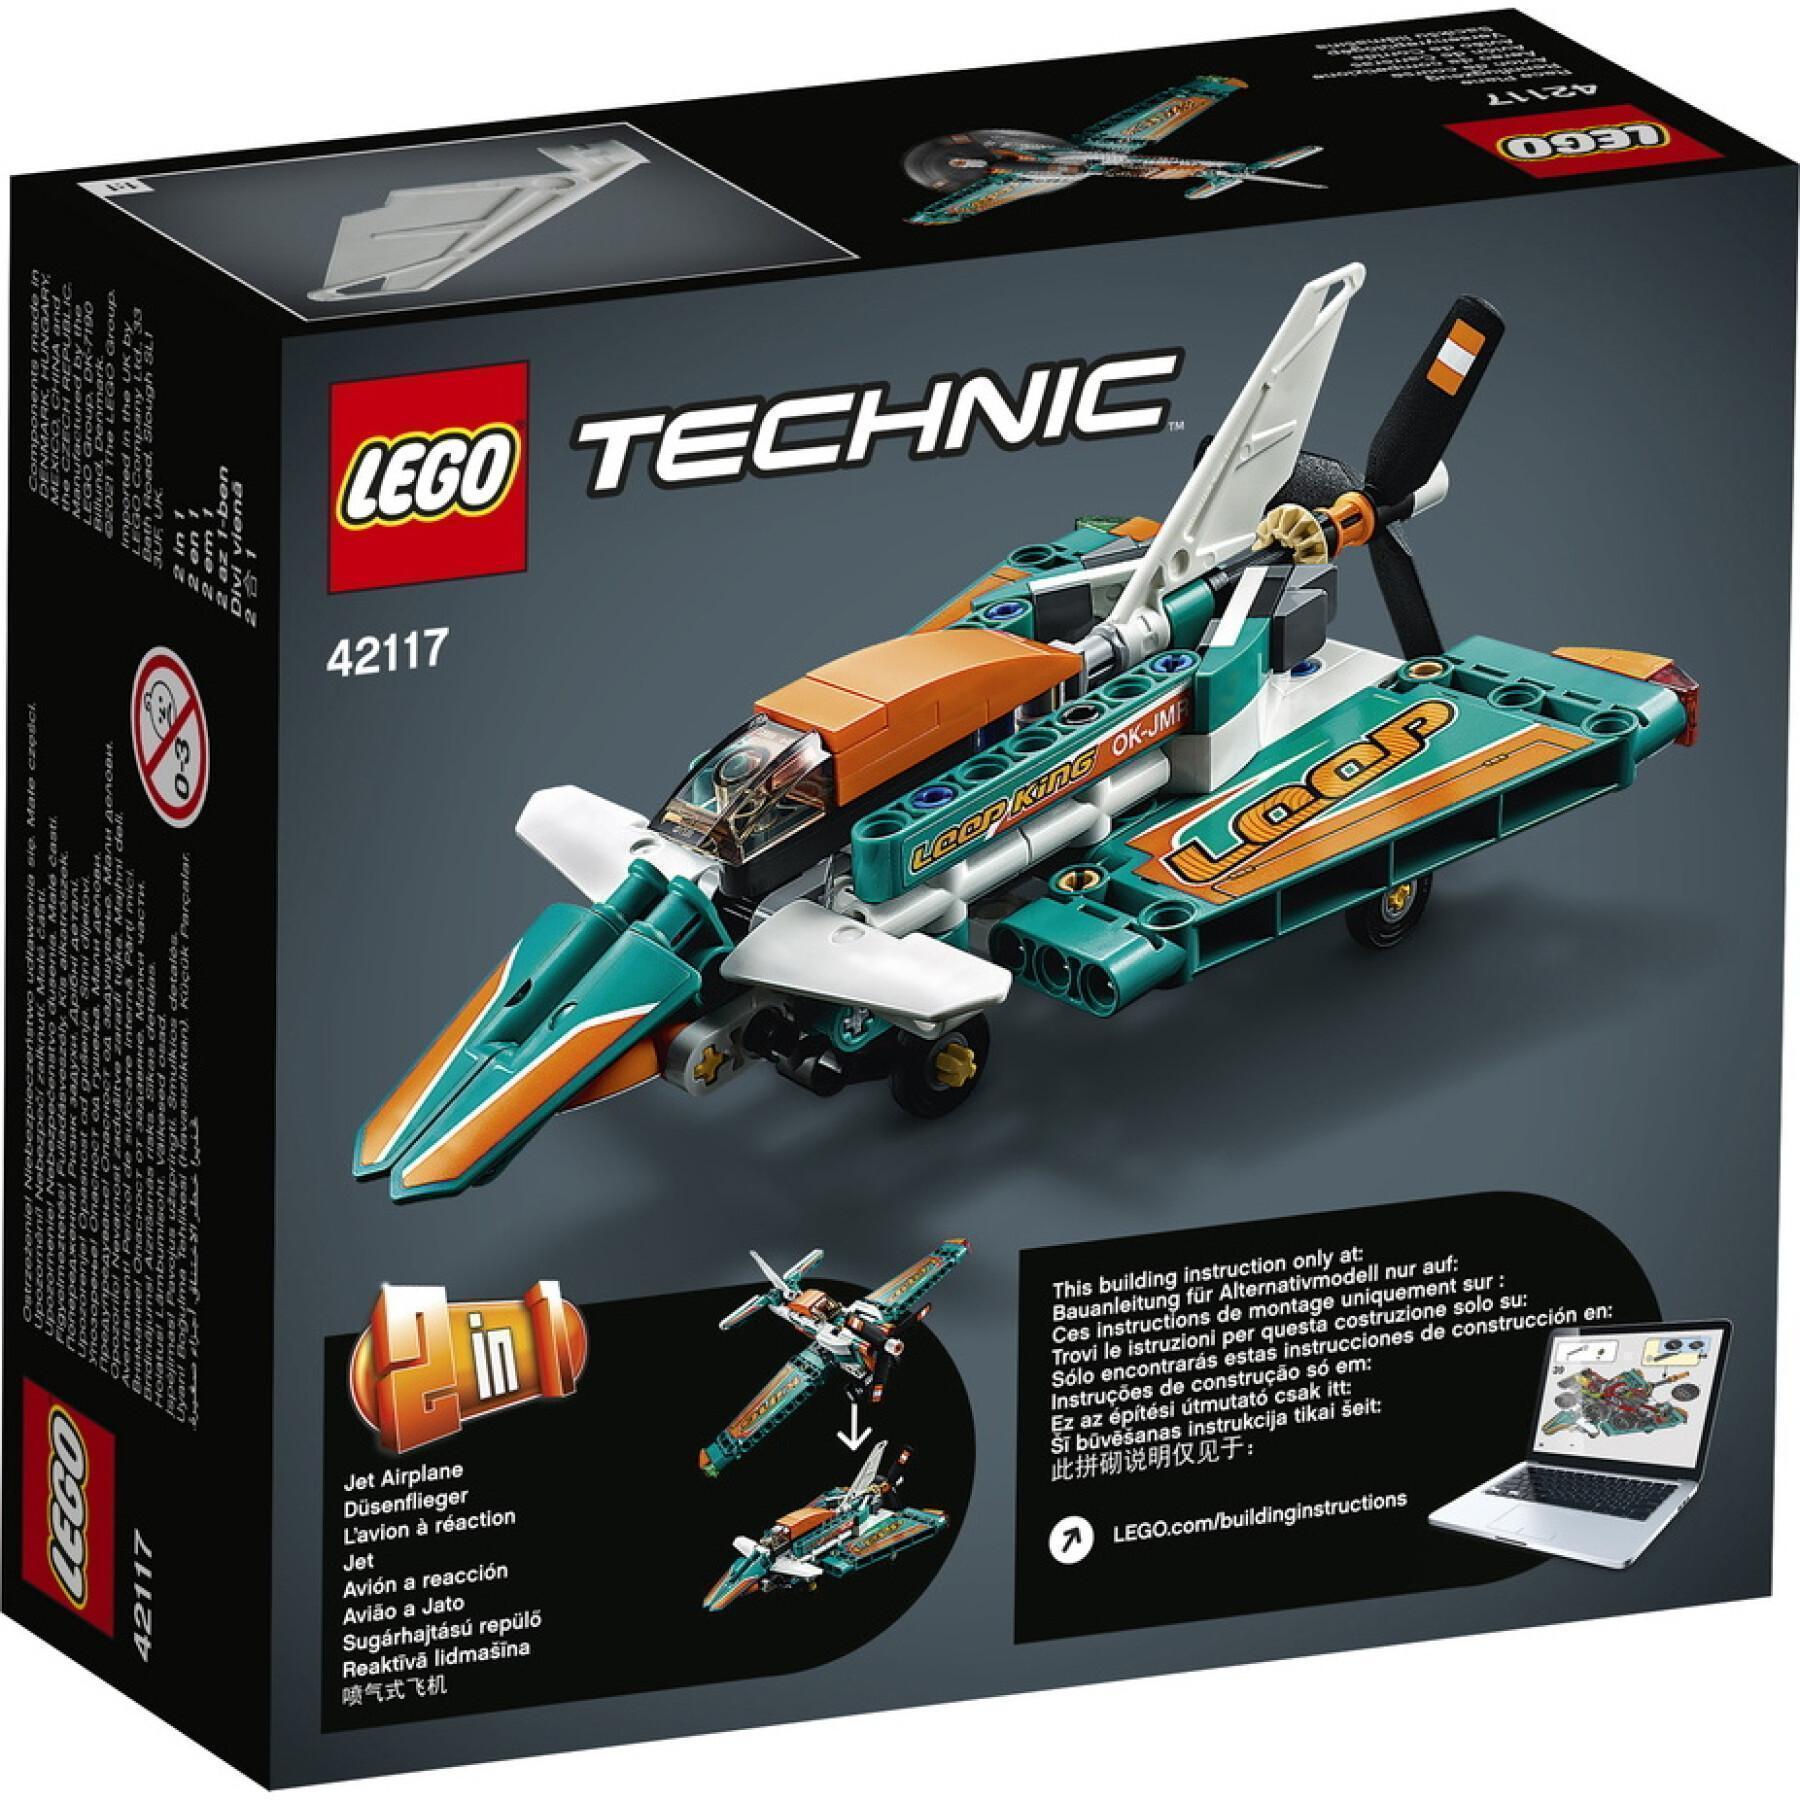 Racing plane Lego Technic